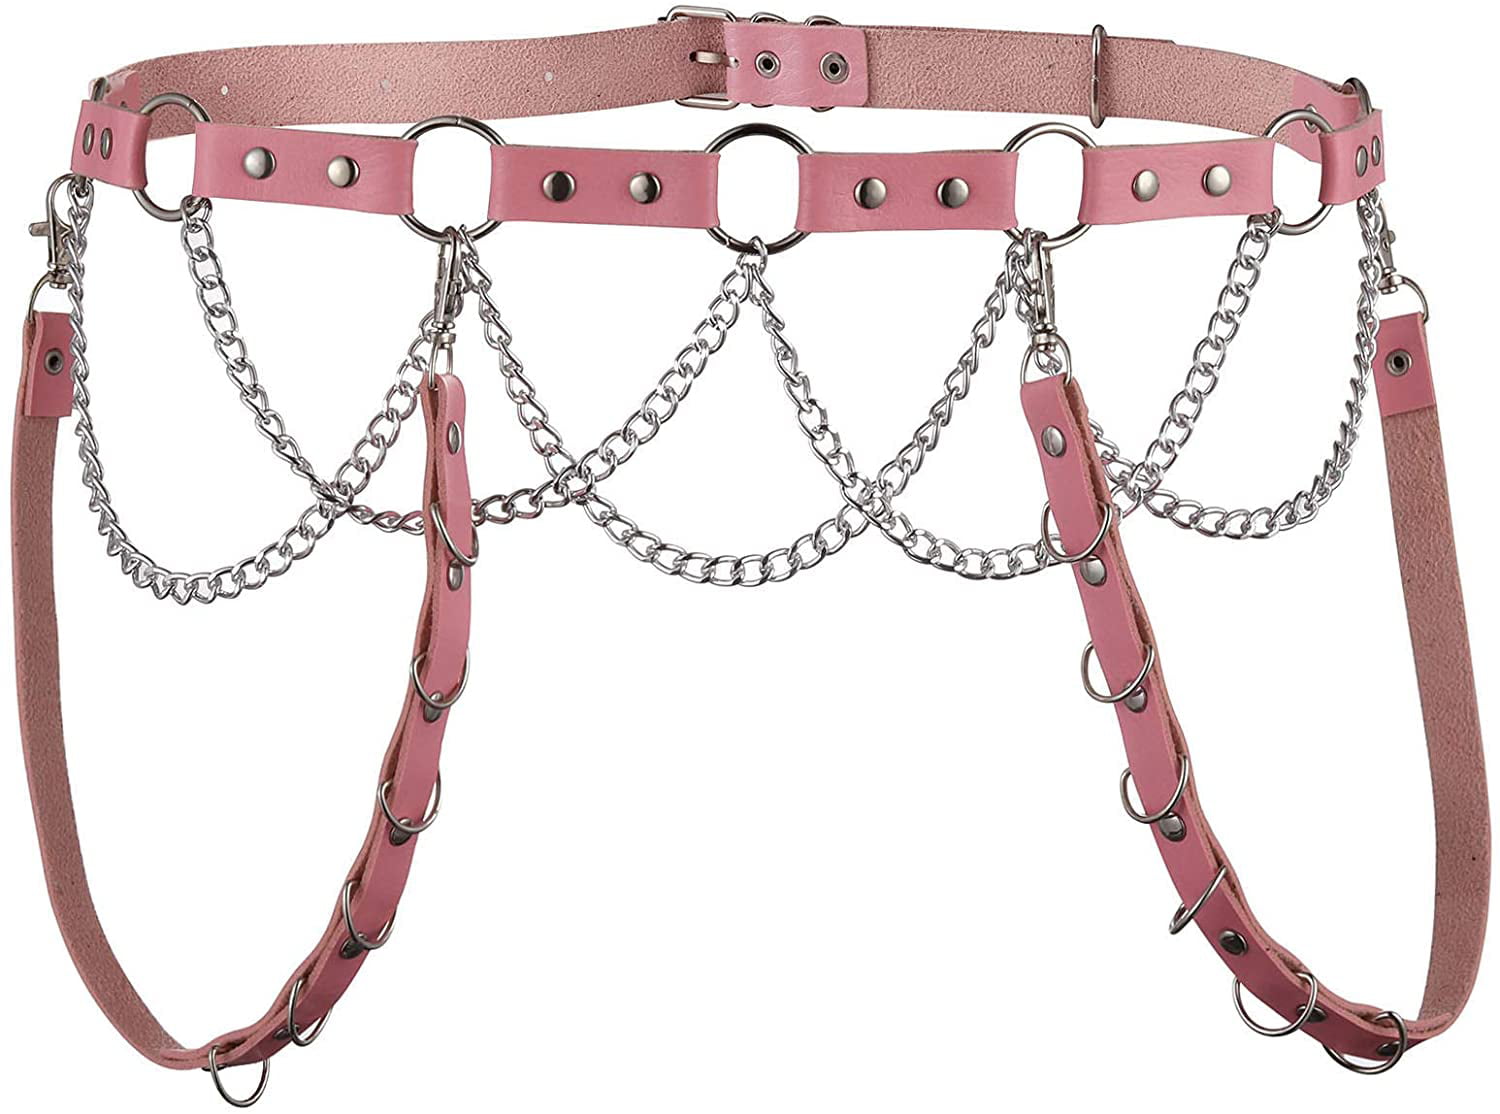 Metal Tassel Punk Rock  Suspender Straps With Chain Waist Belt Body Belts 